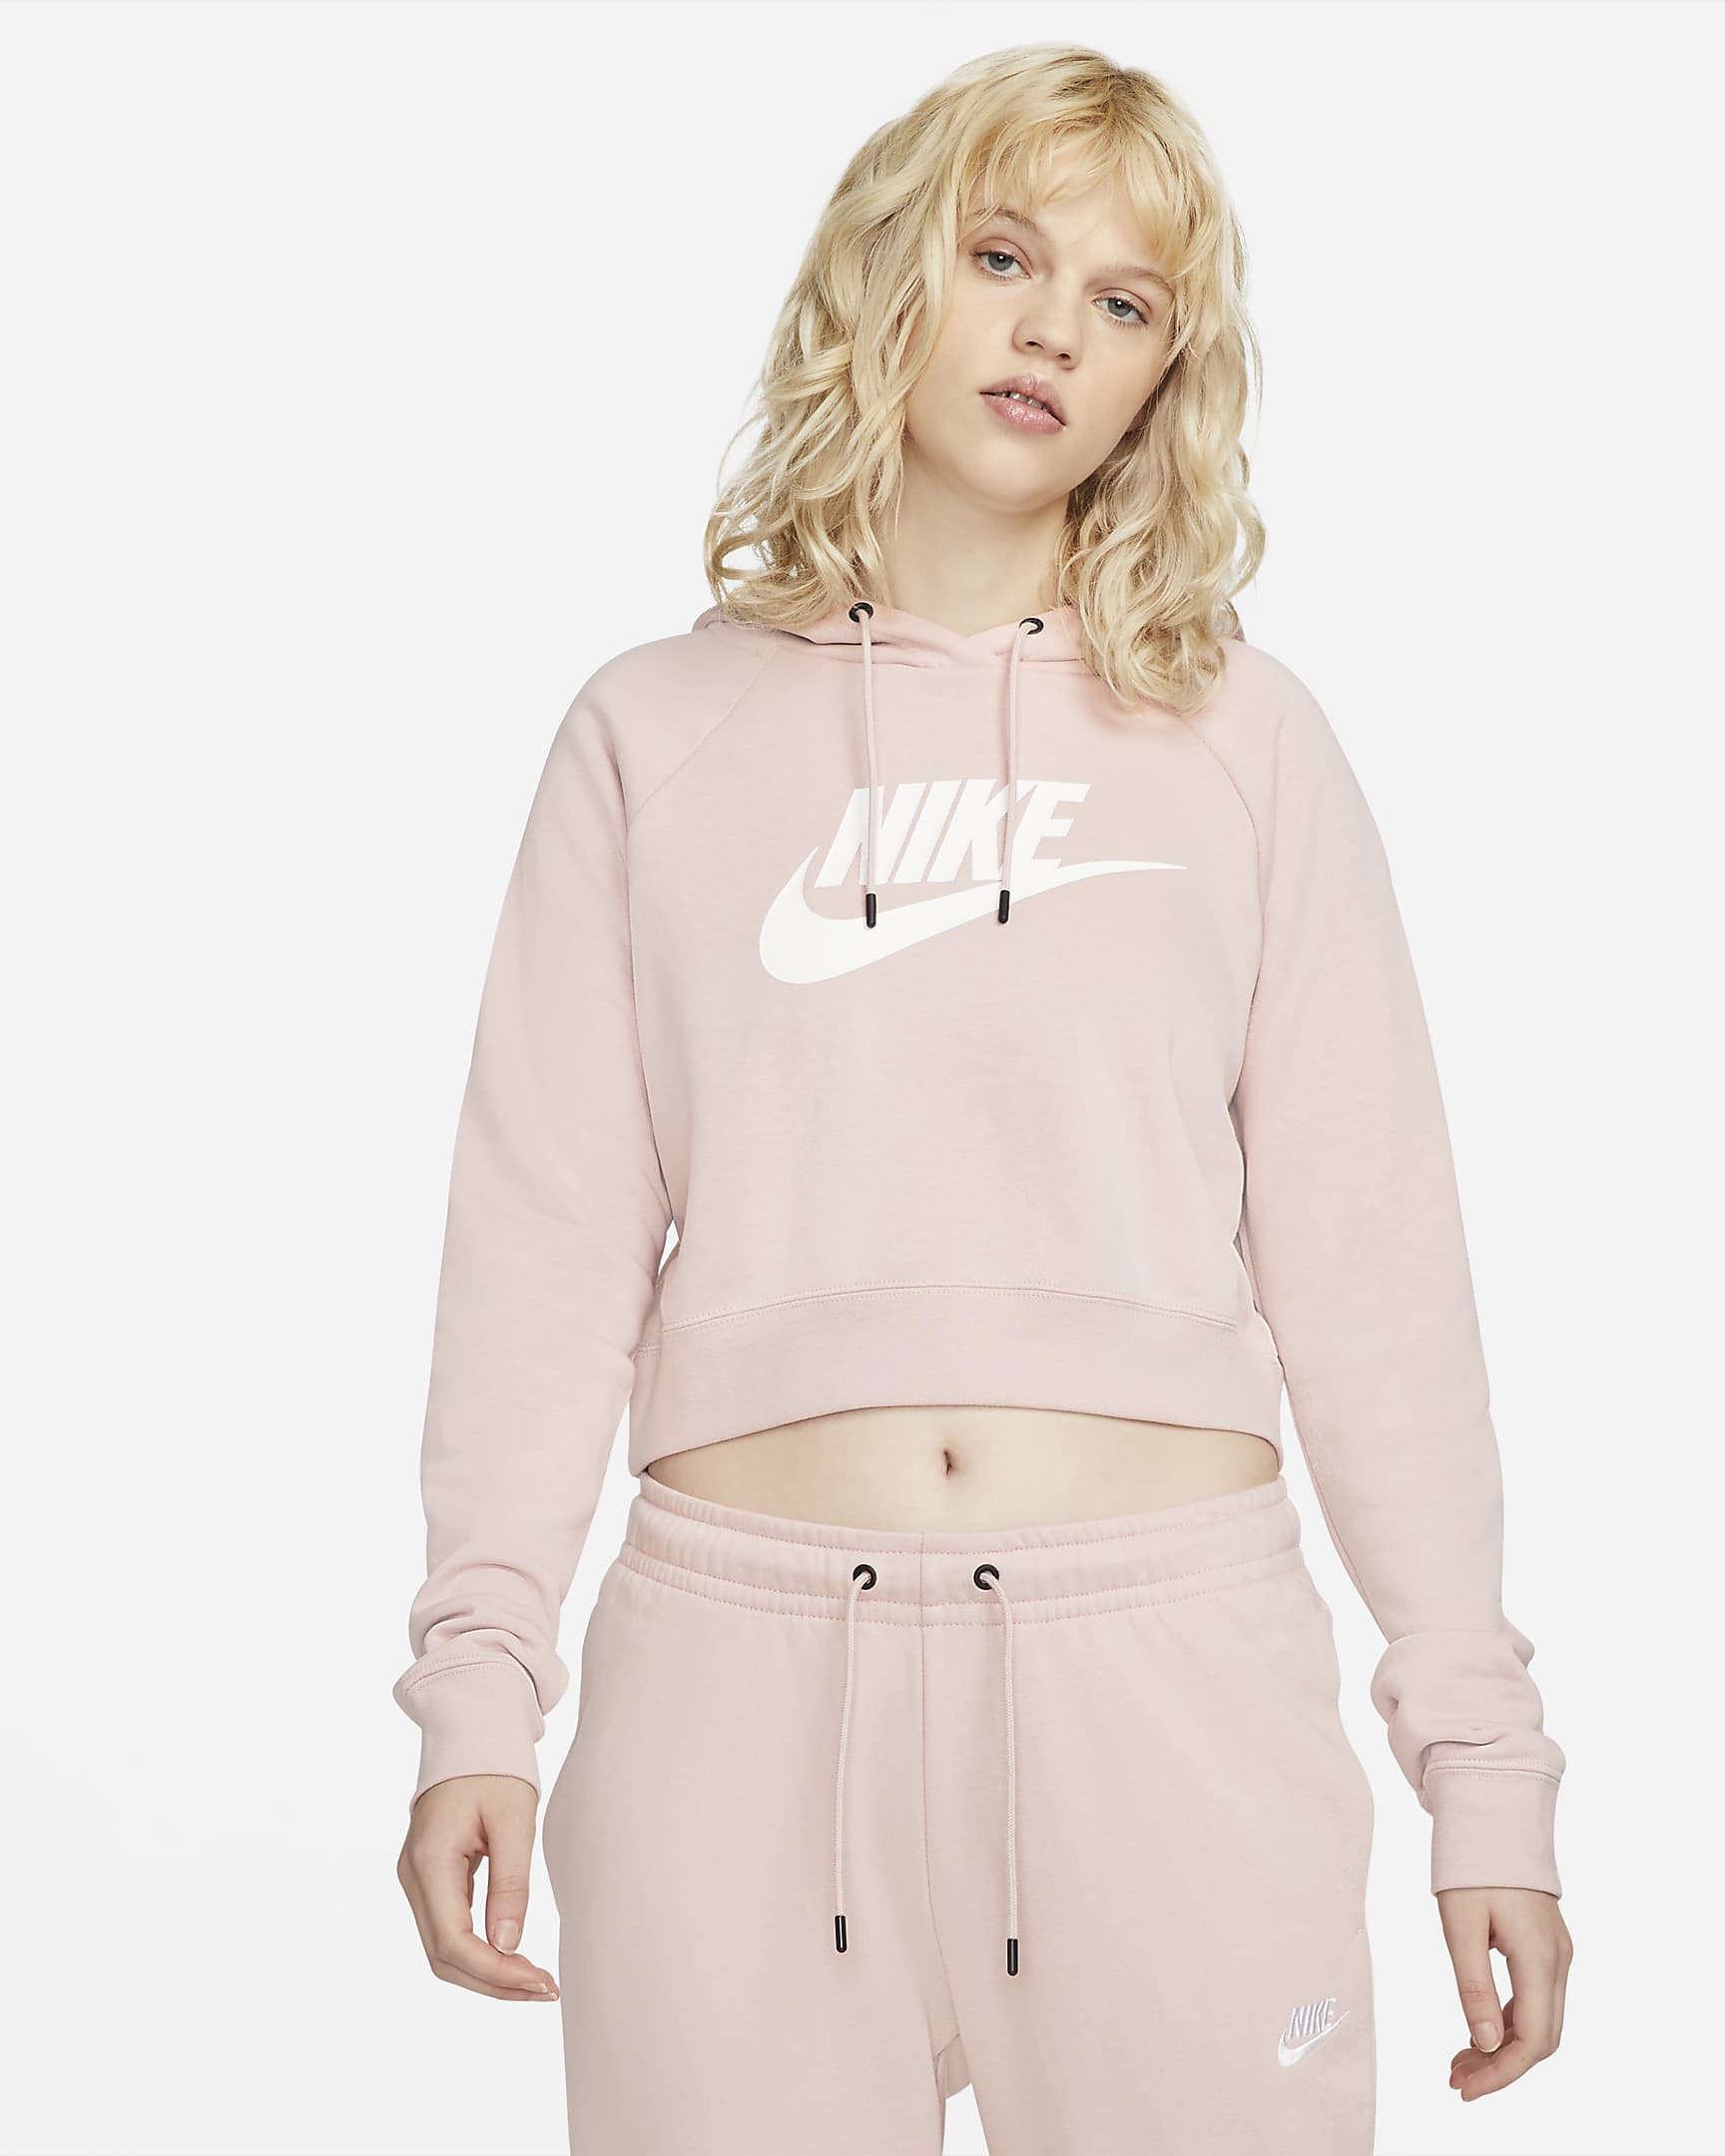 nike-sportswear-essential-womens-cropped-hoodie-5JfMtL.png